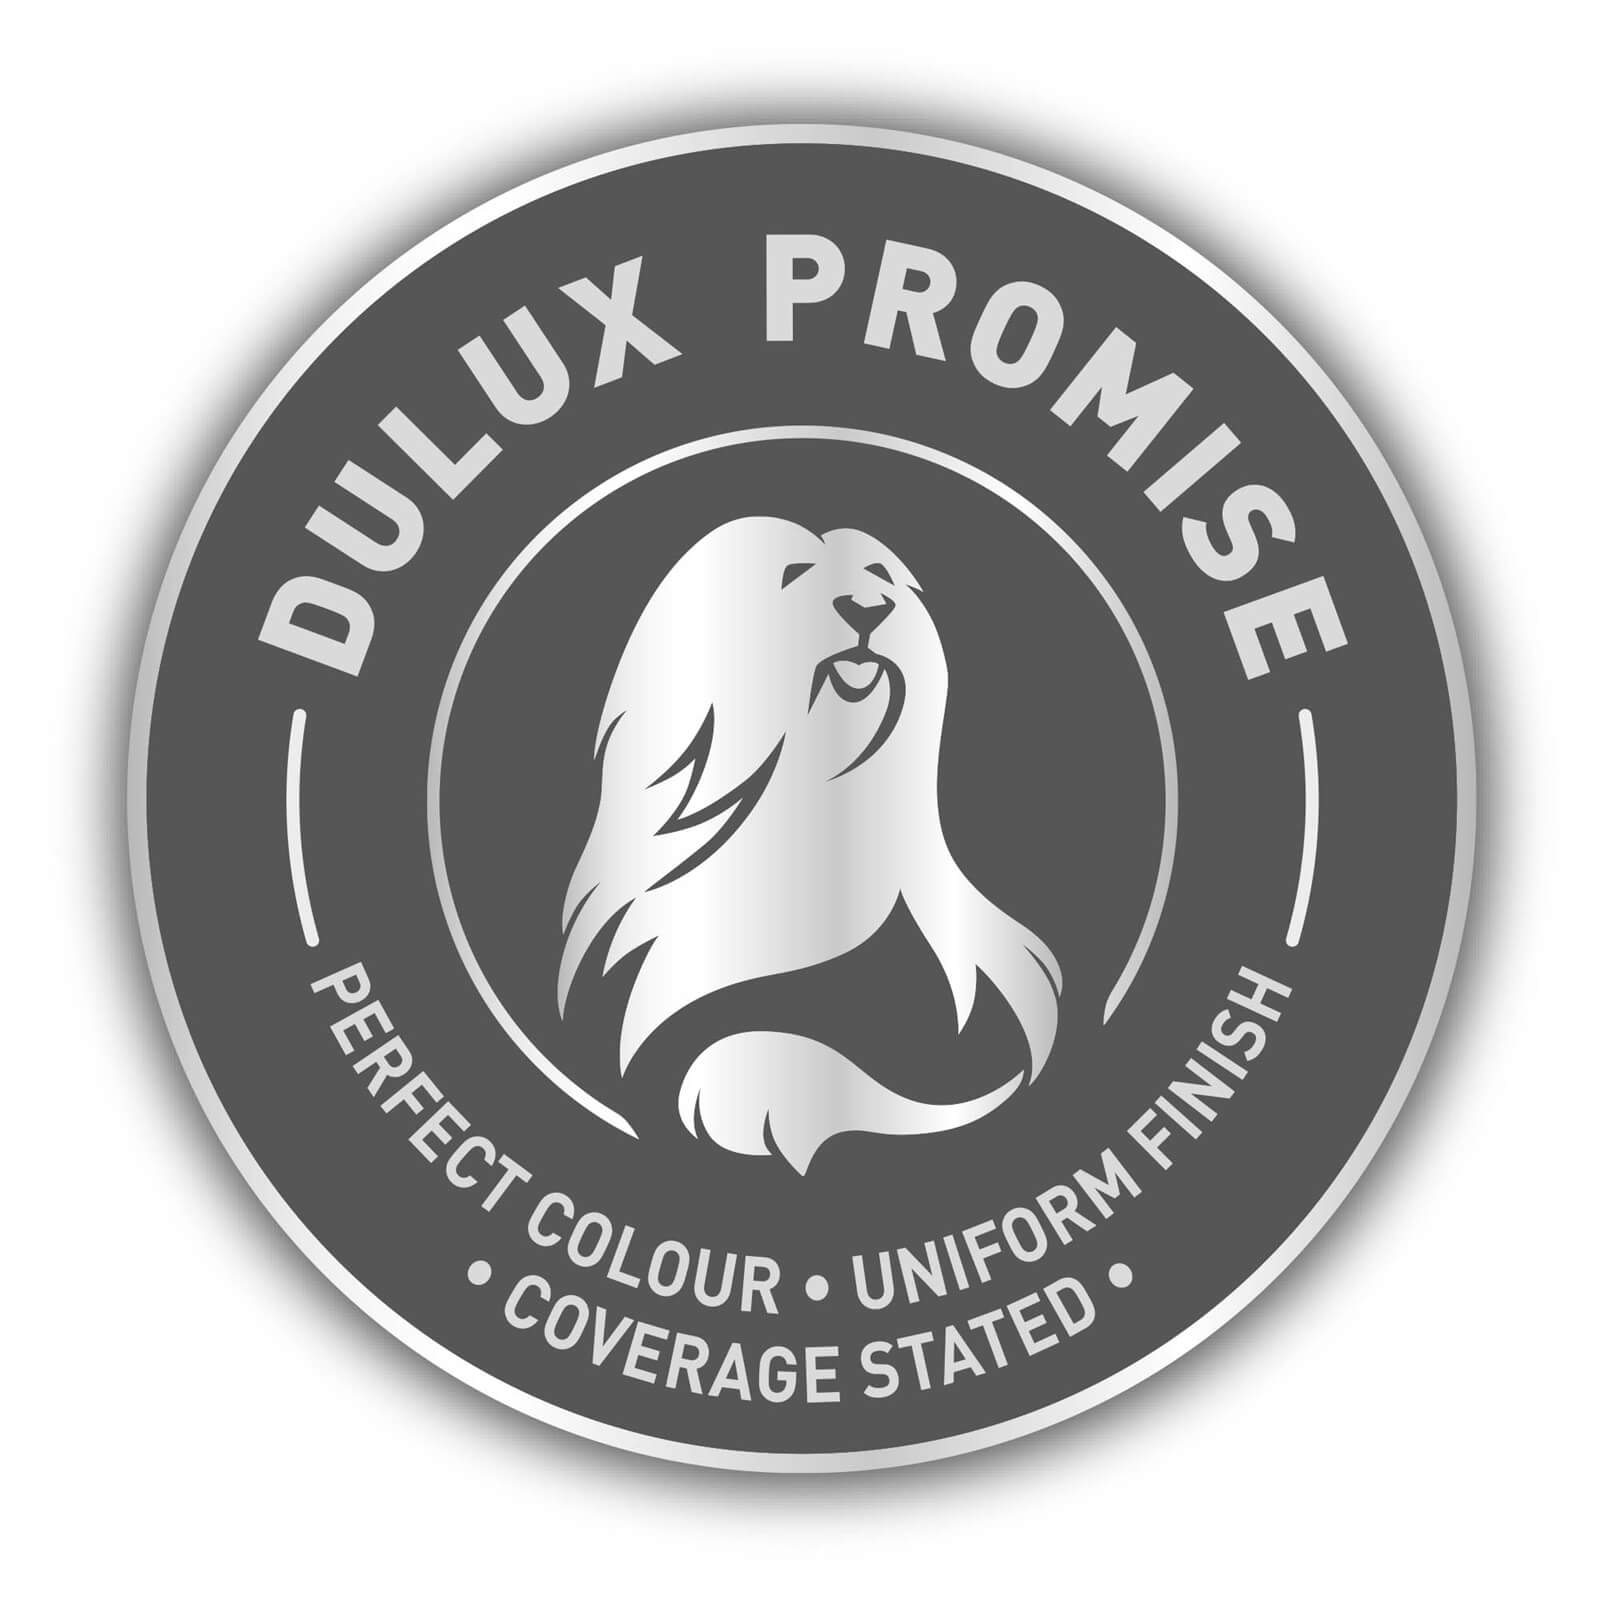 Dulux Silk Emulsion Paint Buttermilk - 5L